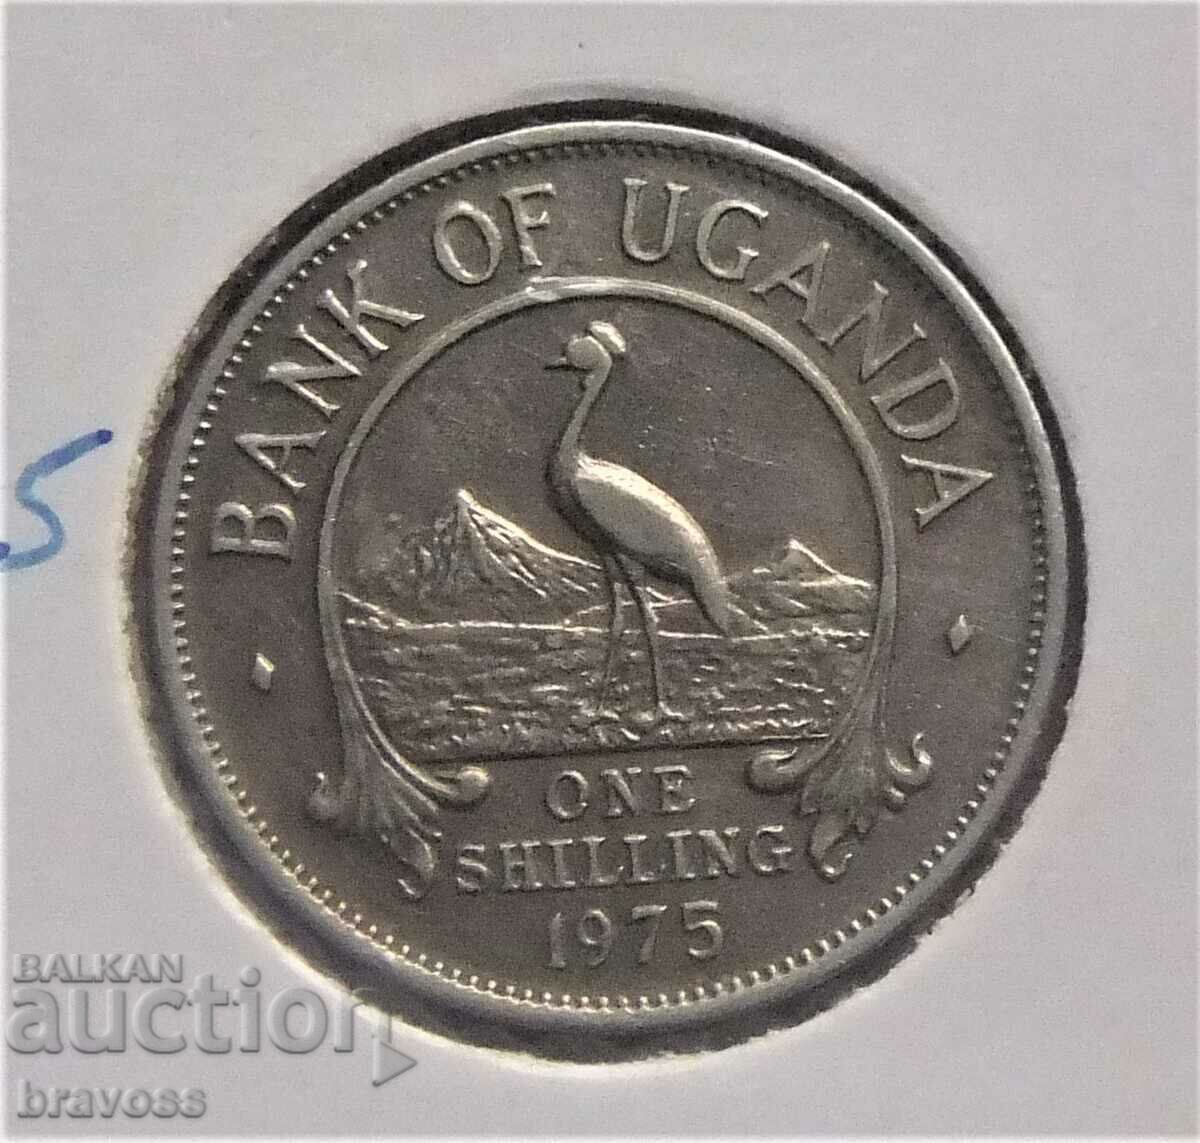 Uganda - 1 sh, 1975